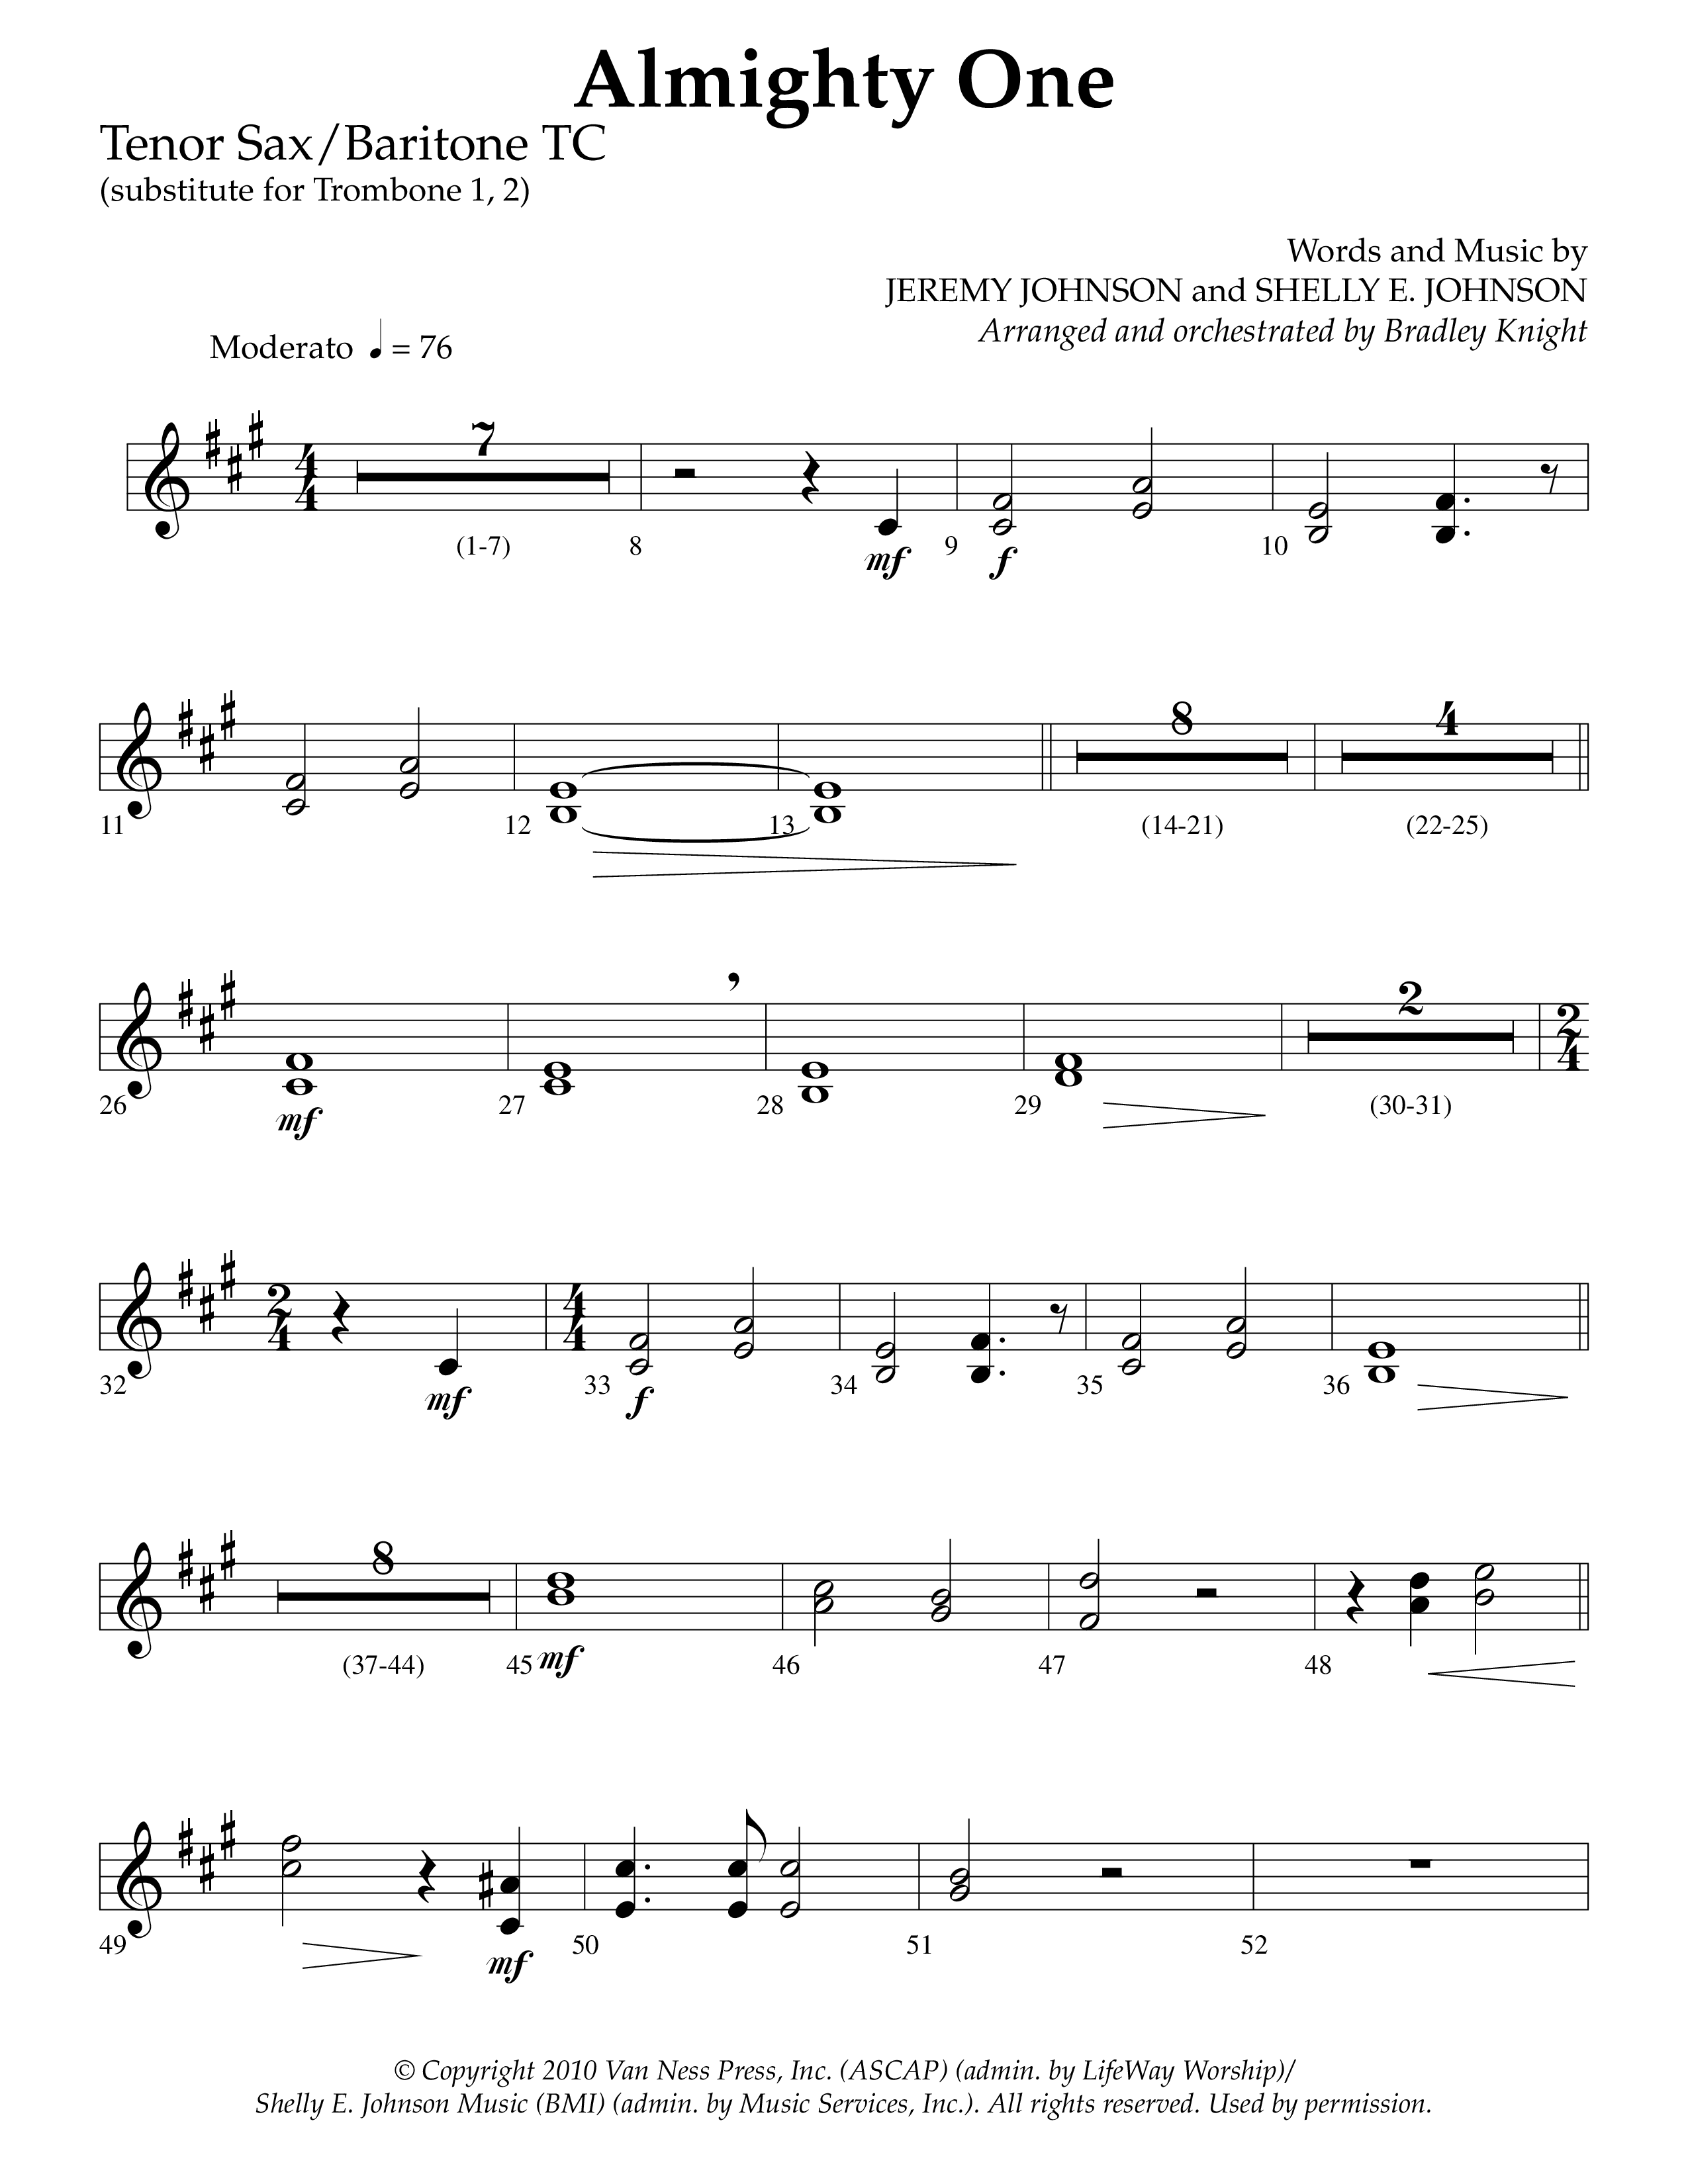 Almighty One (Choral Anthem SATB) Tenor Sax/Baritone T.C. (Lifeway Choral / Arr. Bradley Knight)